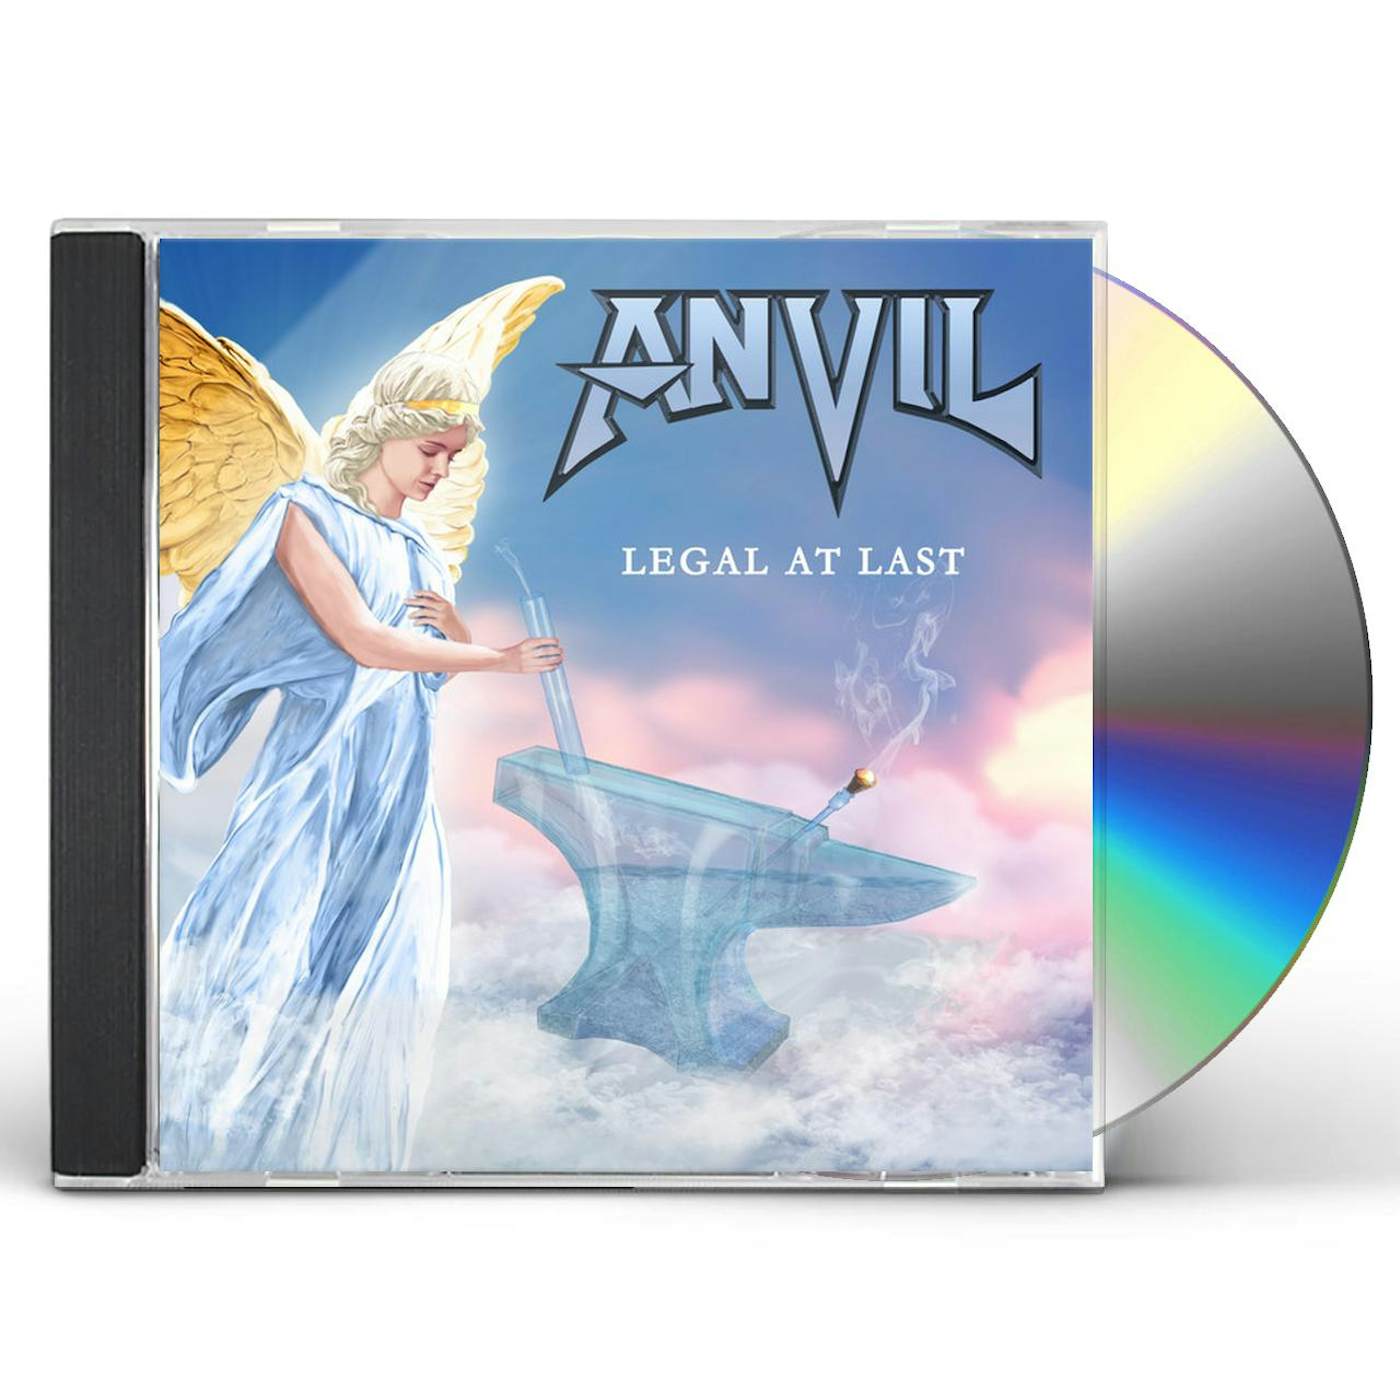 Anvil LEGAL AT LAST CD